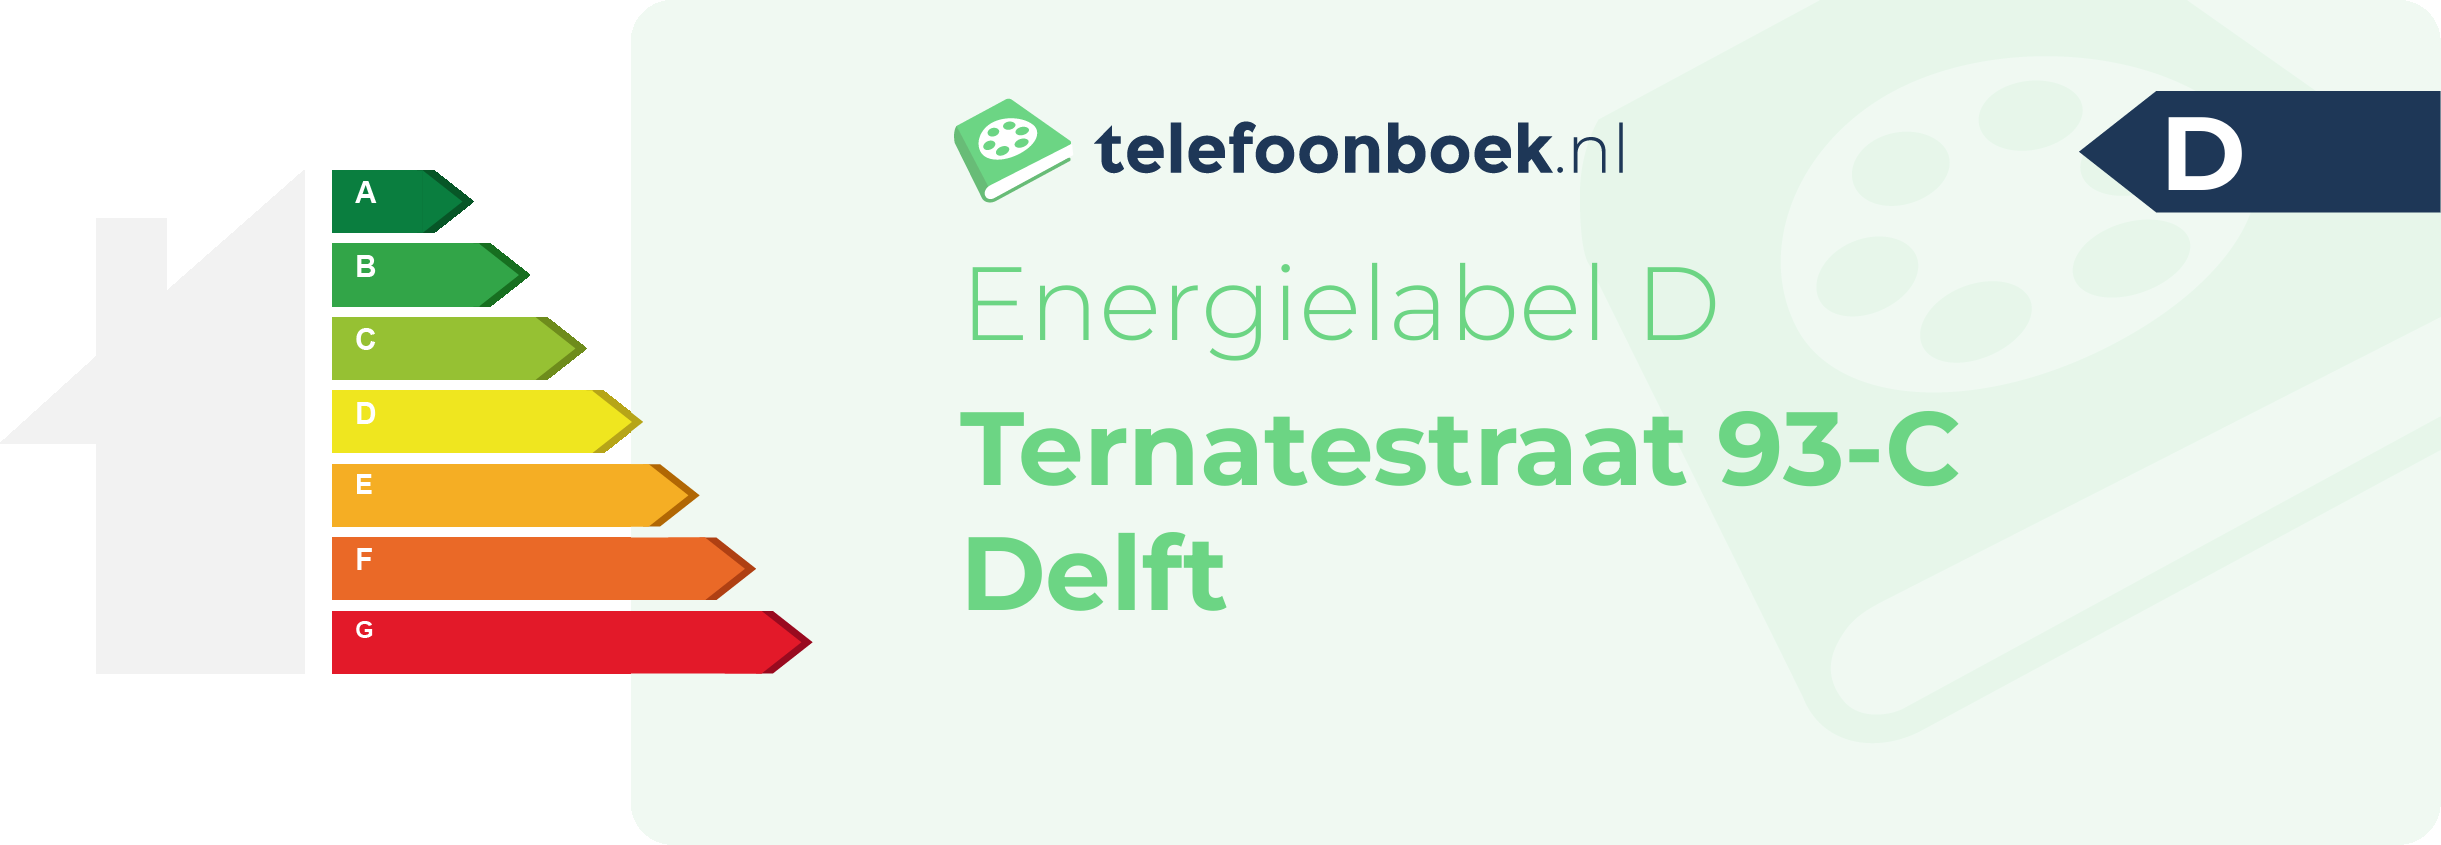 Energielabel Ternatestraat 93-C Delft